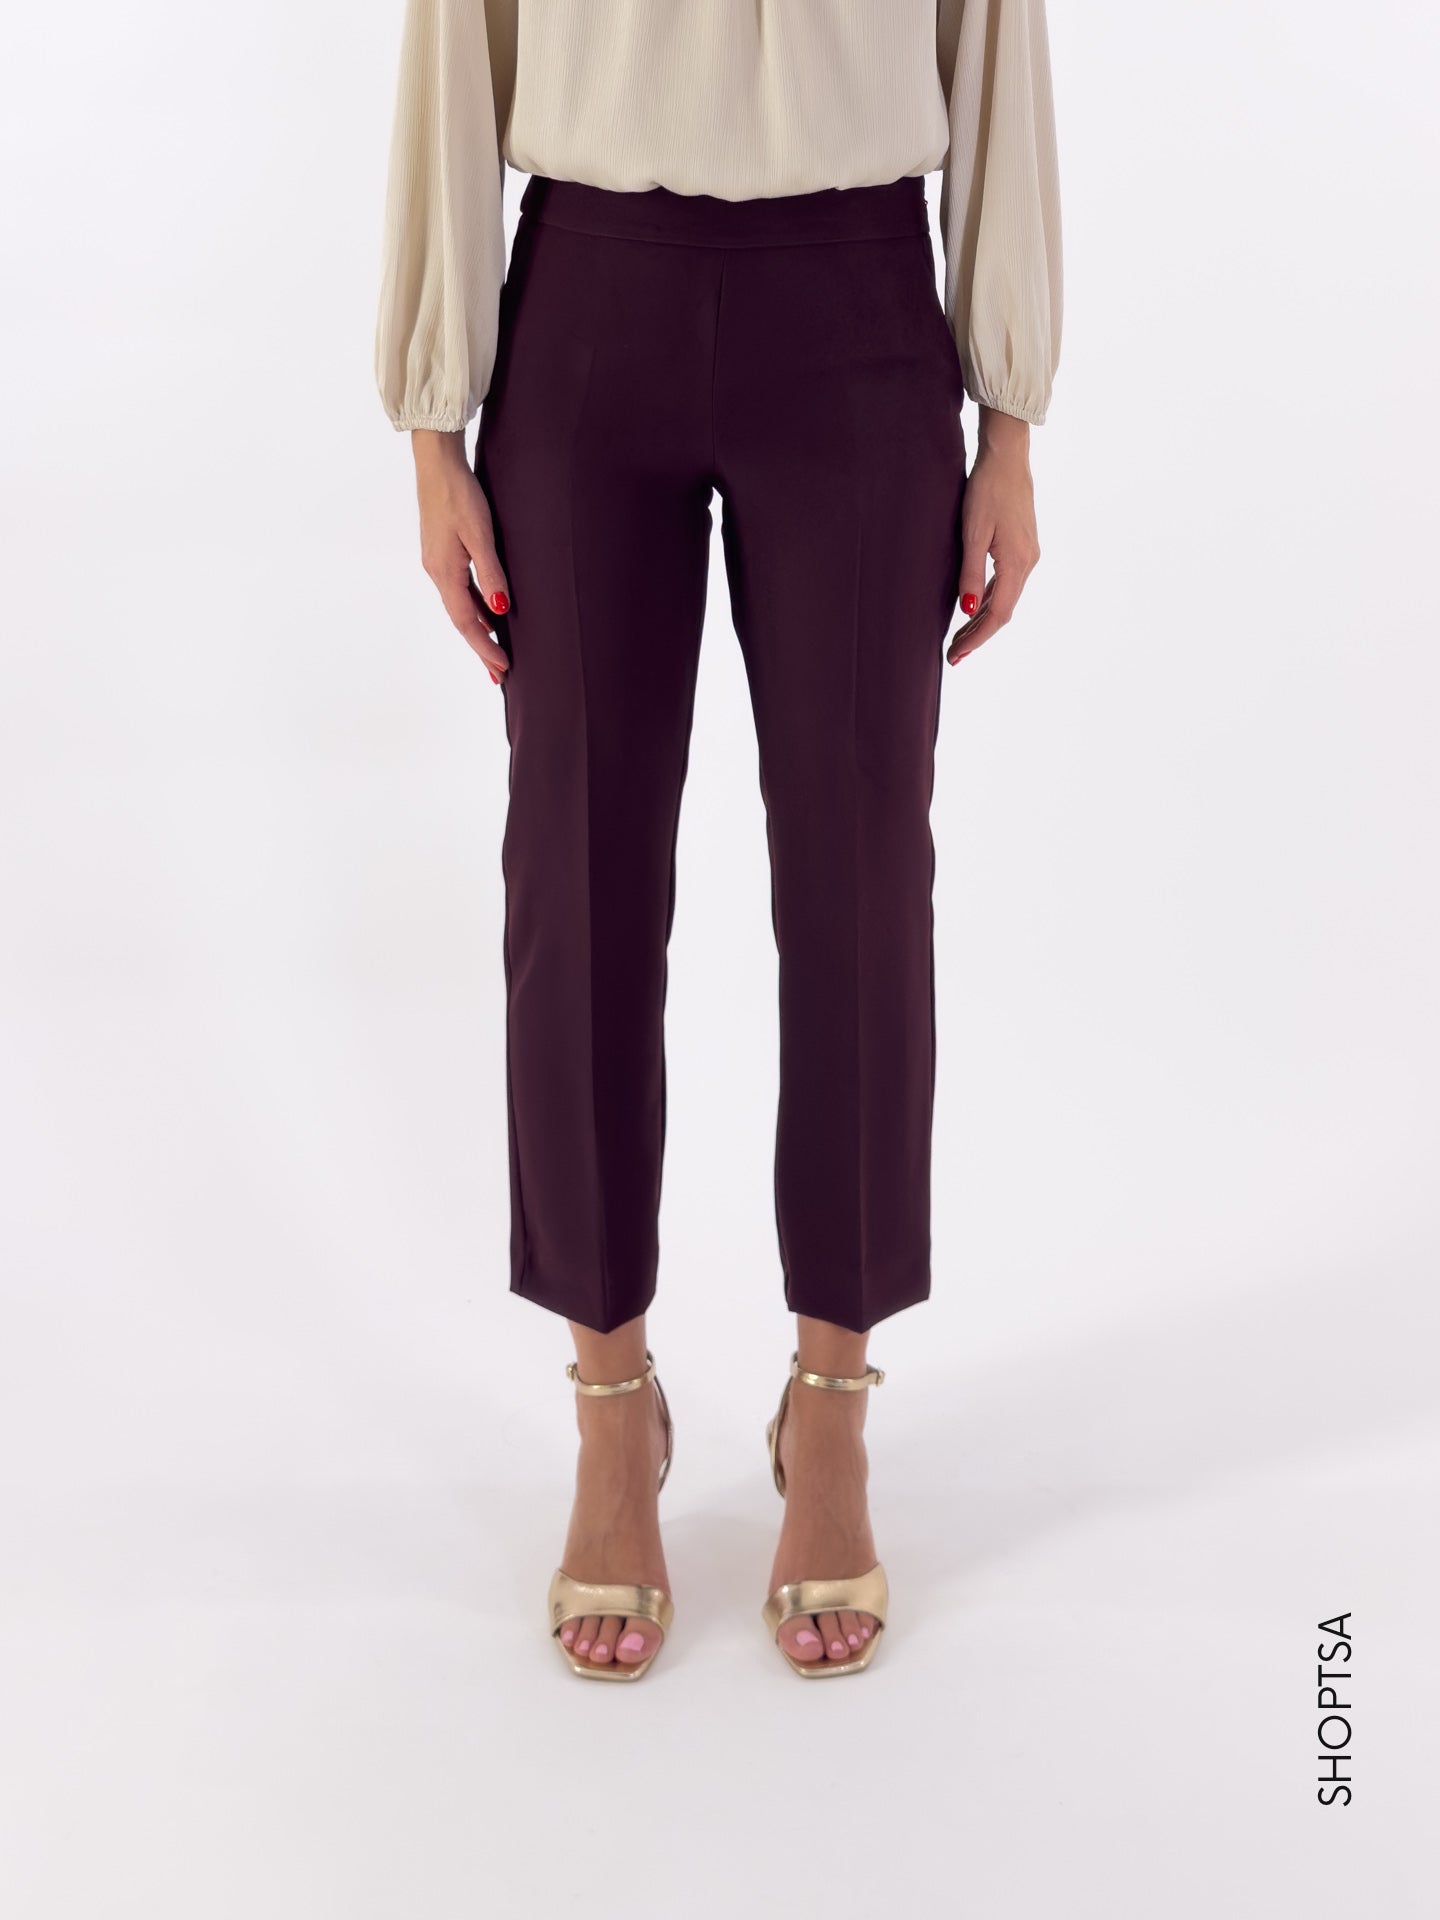 NOZIONE burgundy trousers - EMME Marella